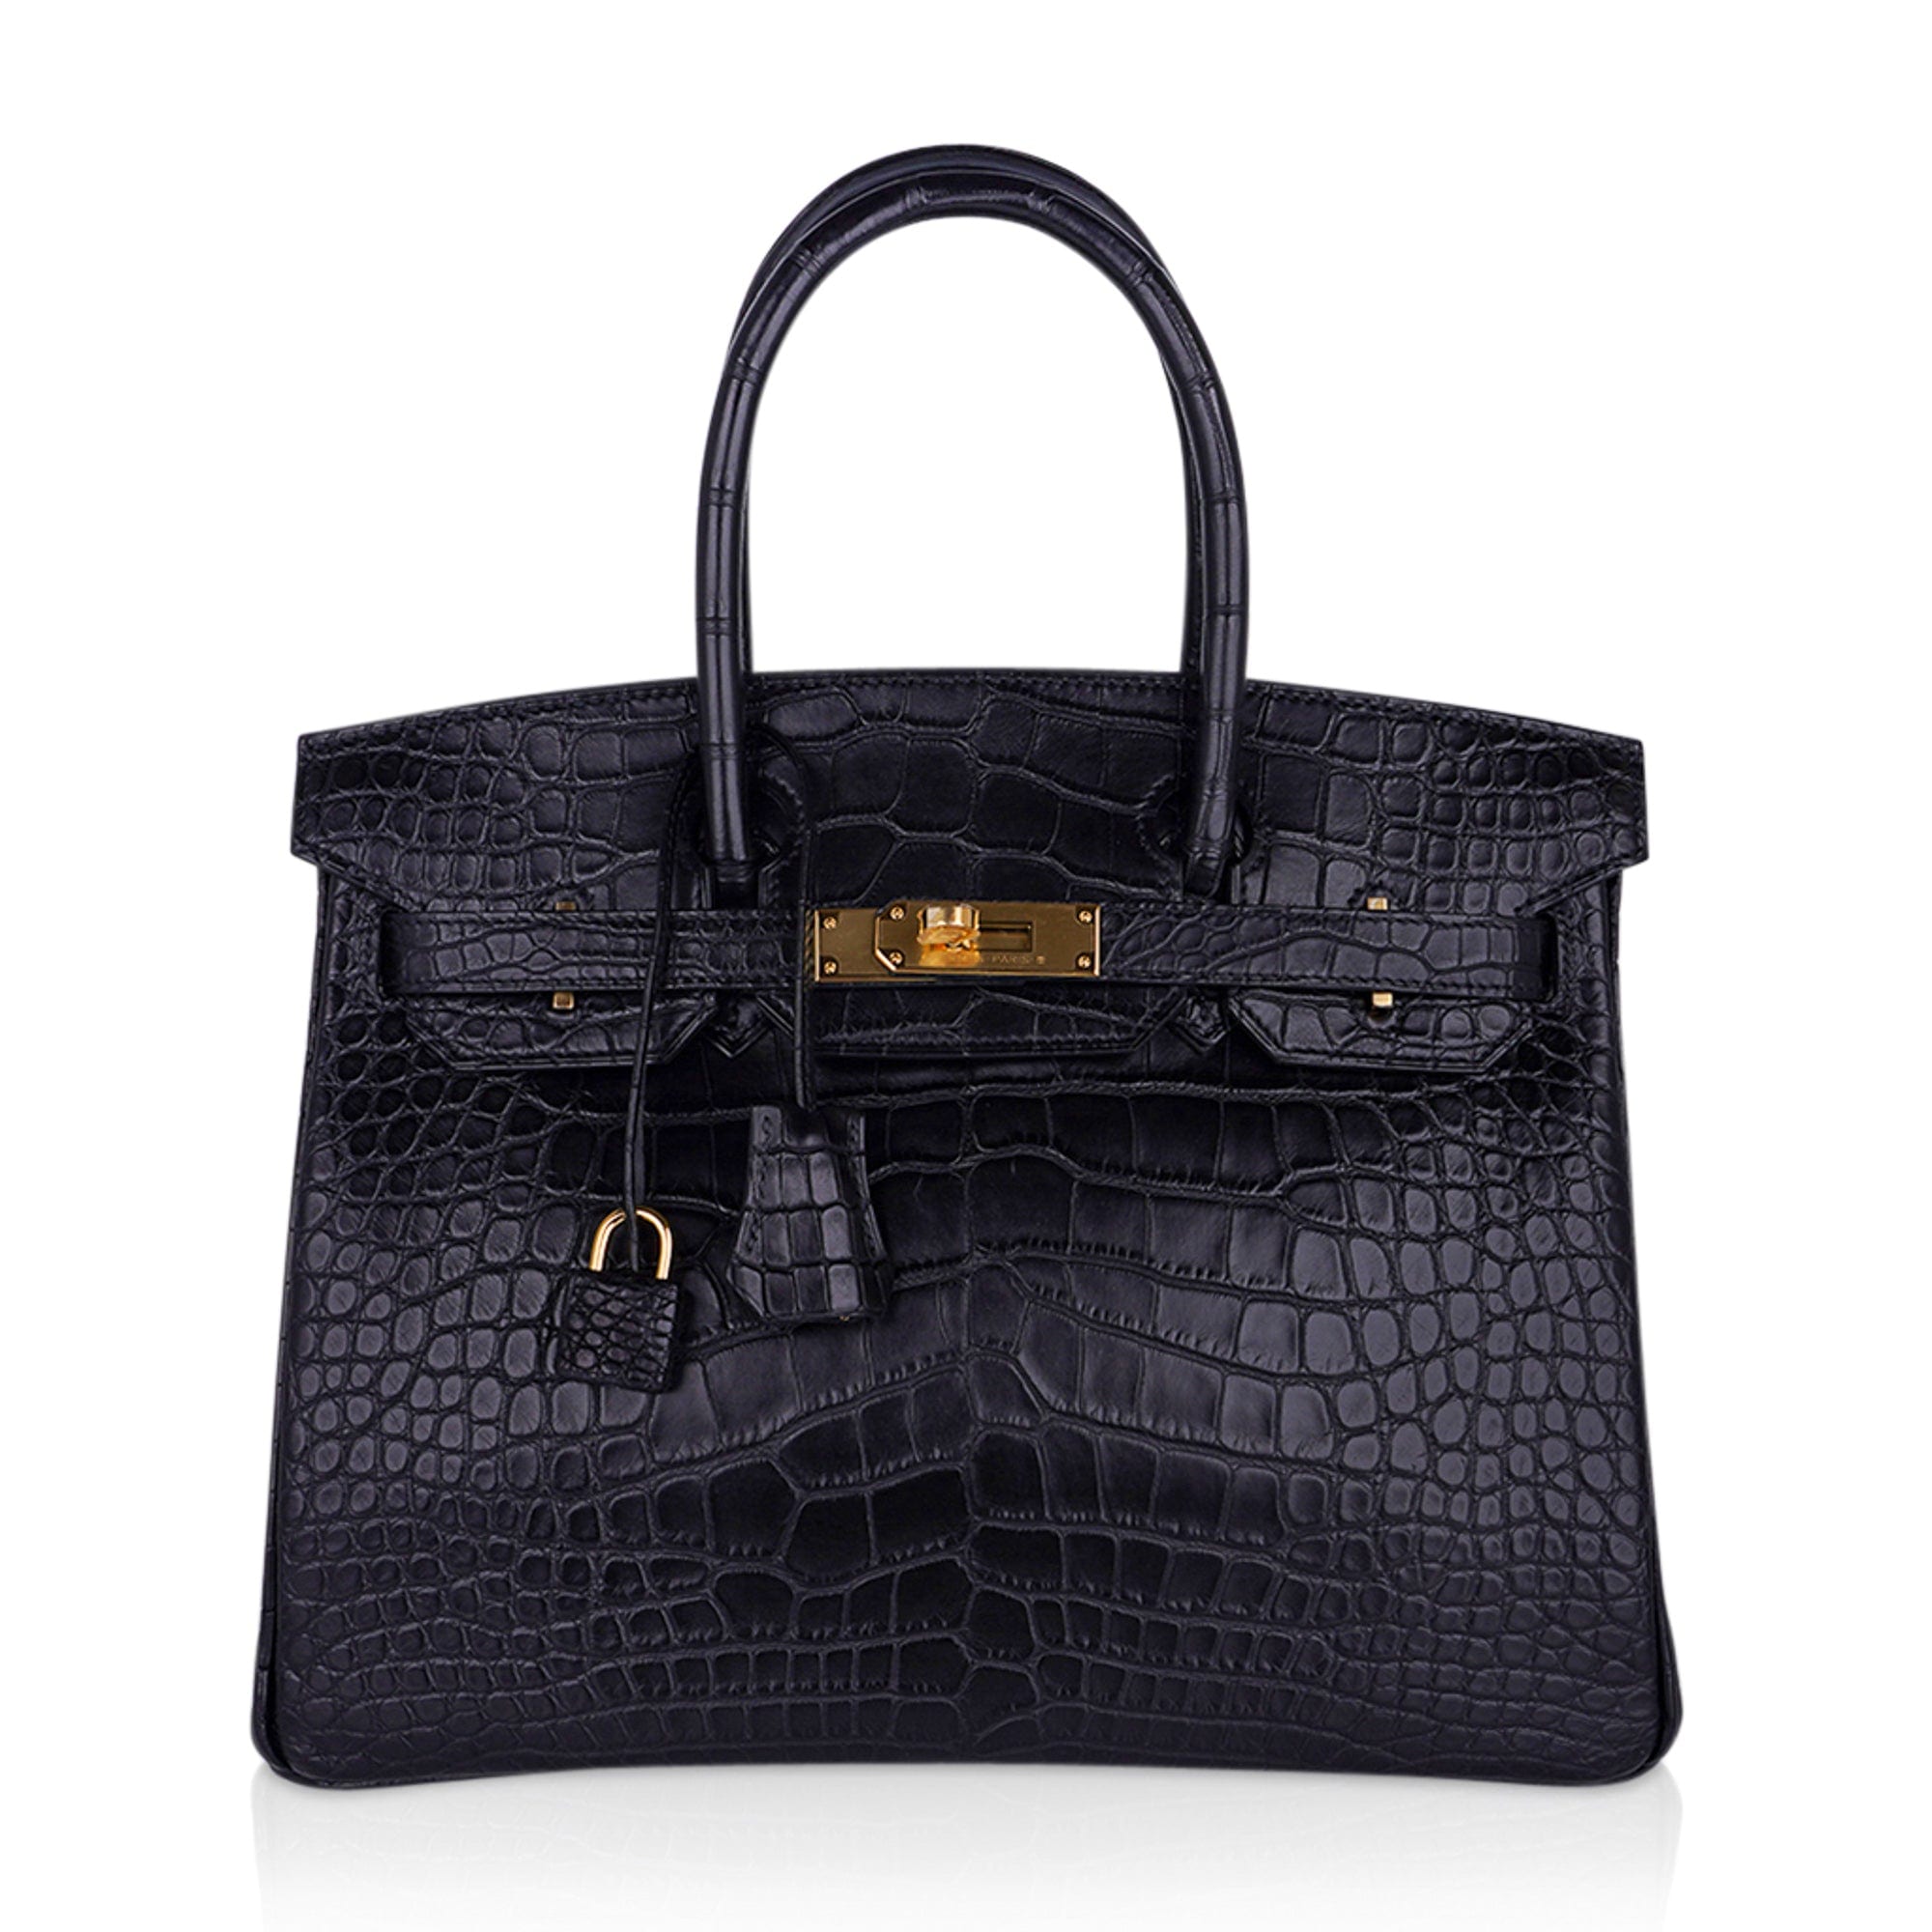 Hermes Birkin 30 Matte Alligator Black Bag Gold Hardware – Mightychic